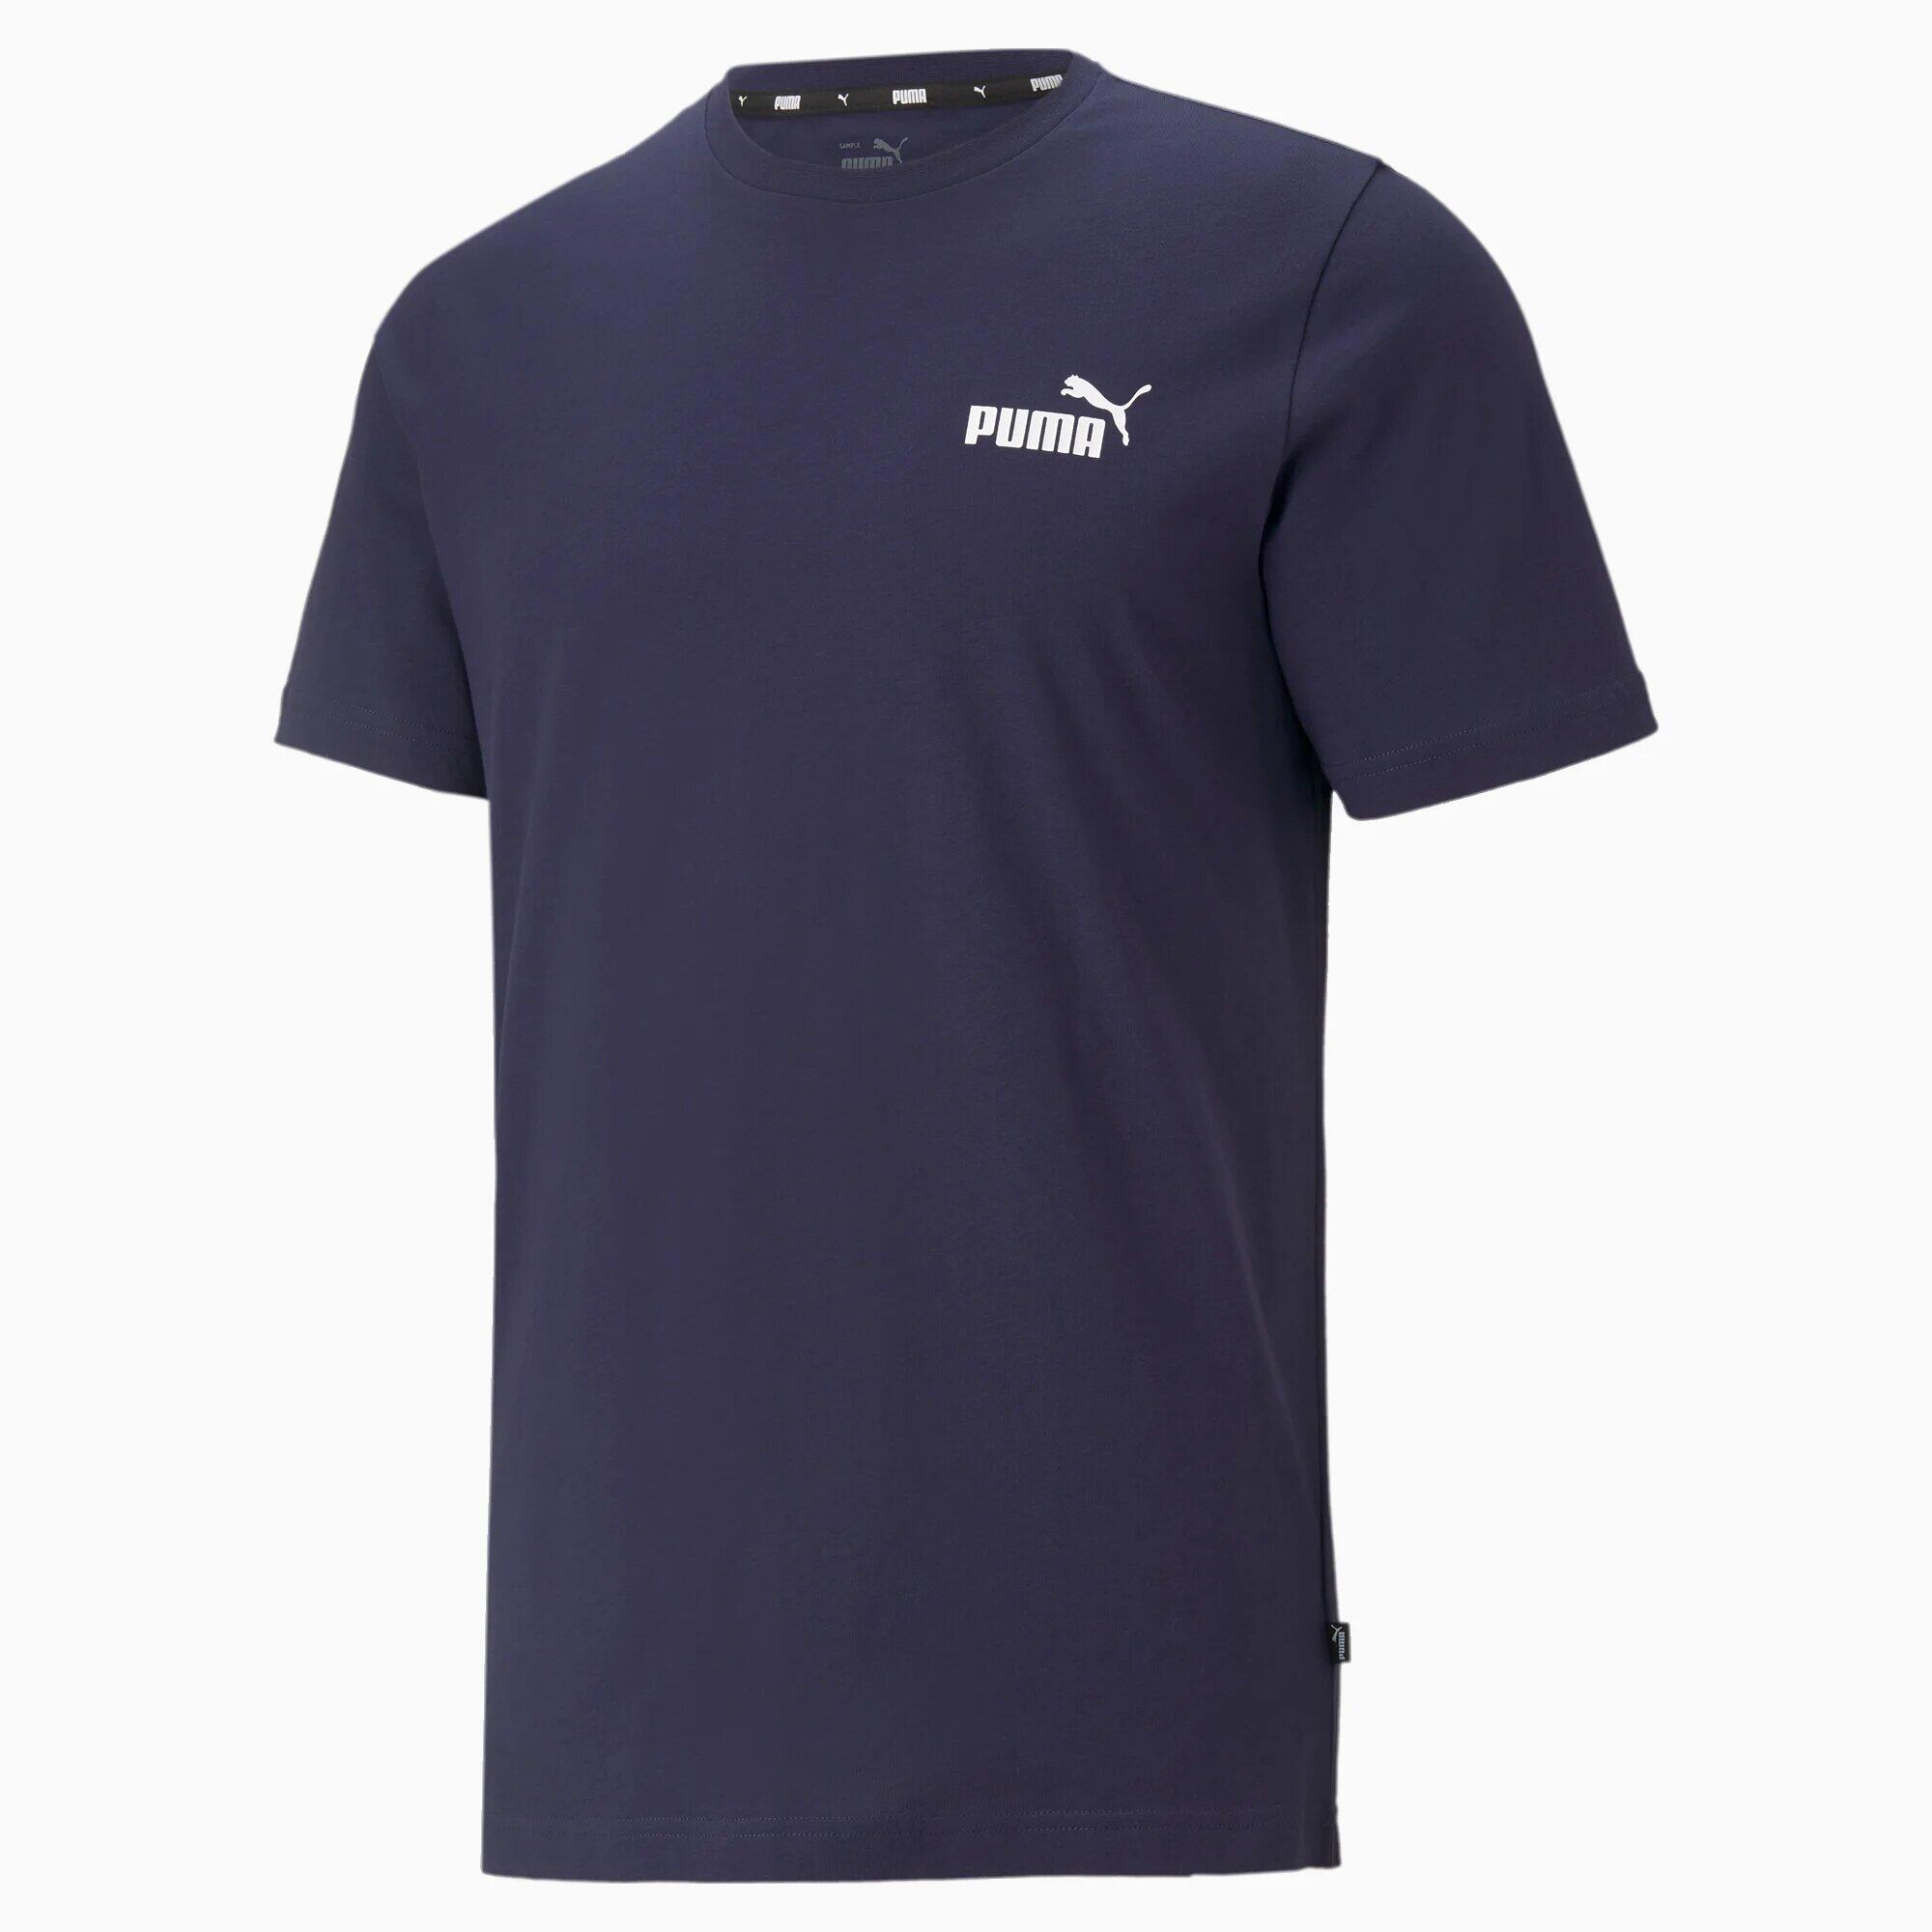 PUMA Mens Essentials Small Logo T-Shirt Tee Top - Peacoat 1/7